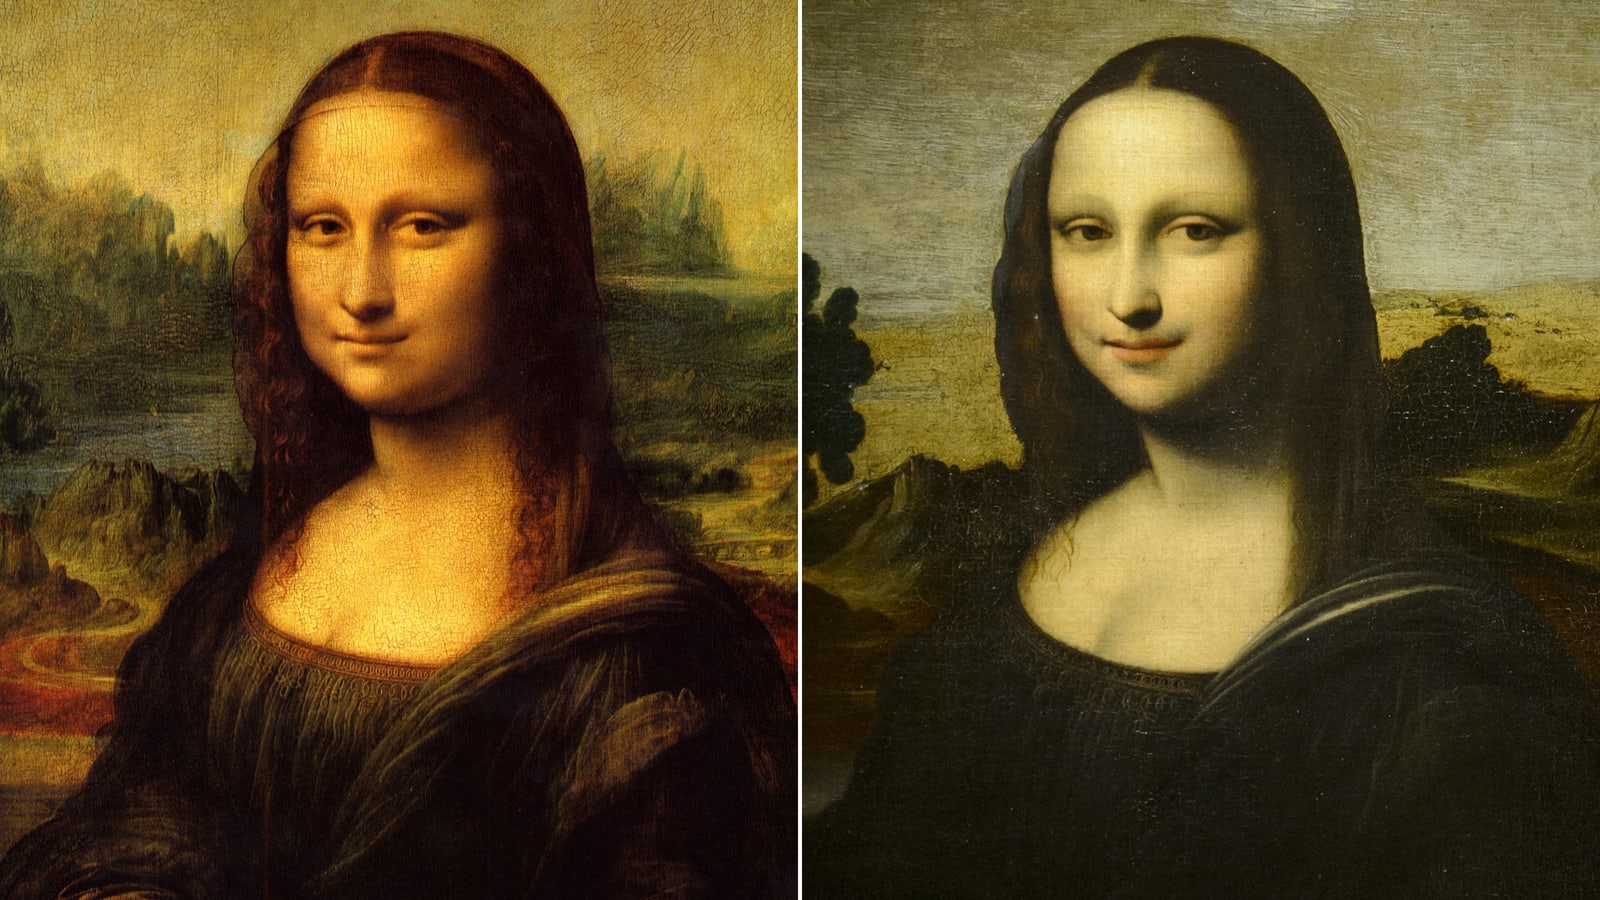 معركة قانونية بسبب "نسحة سابقة" مثيرة للجدل للوحة موناليزا الشهيرة 